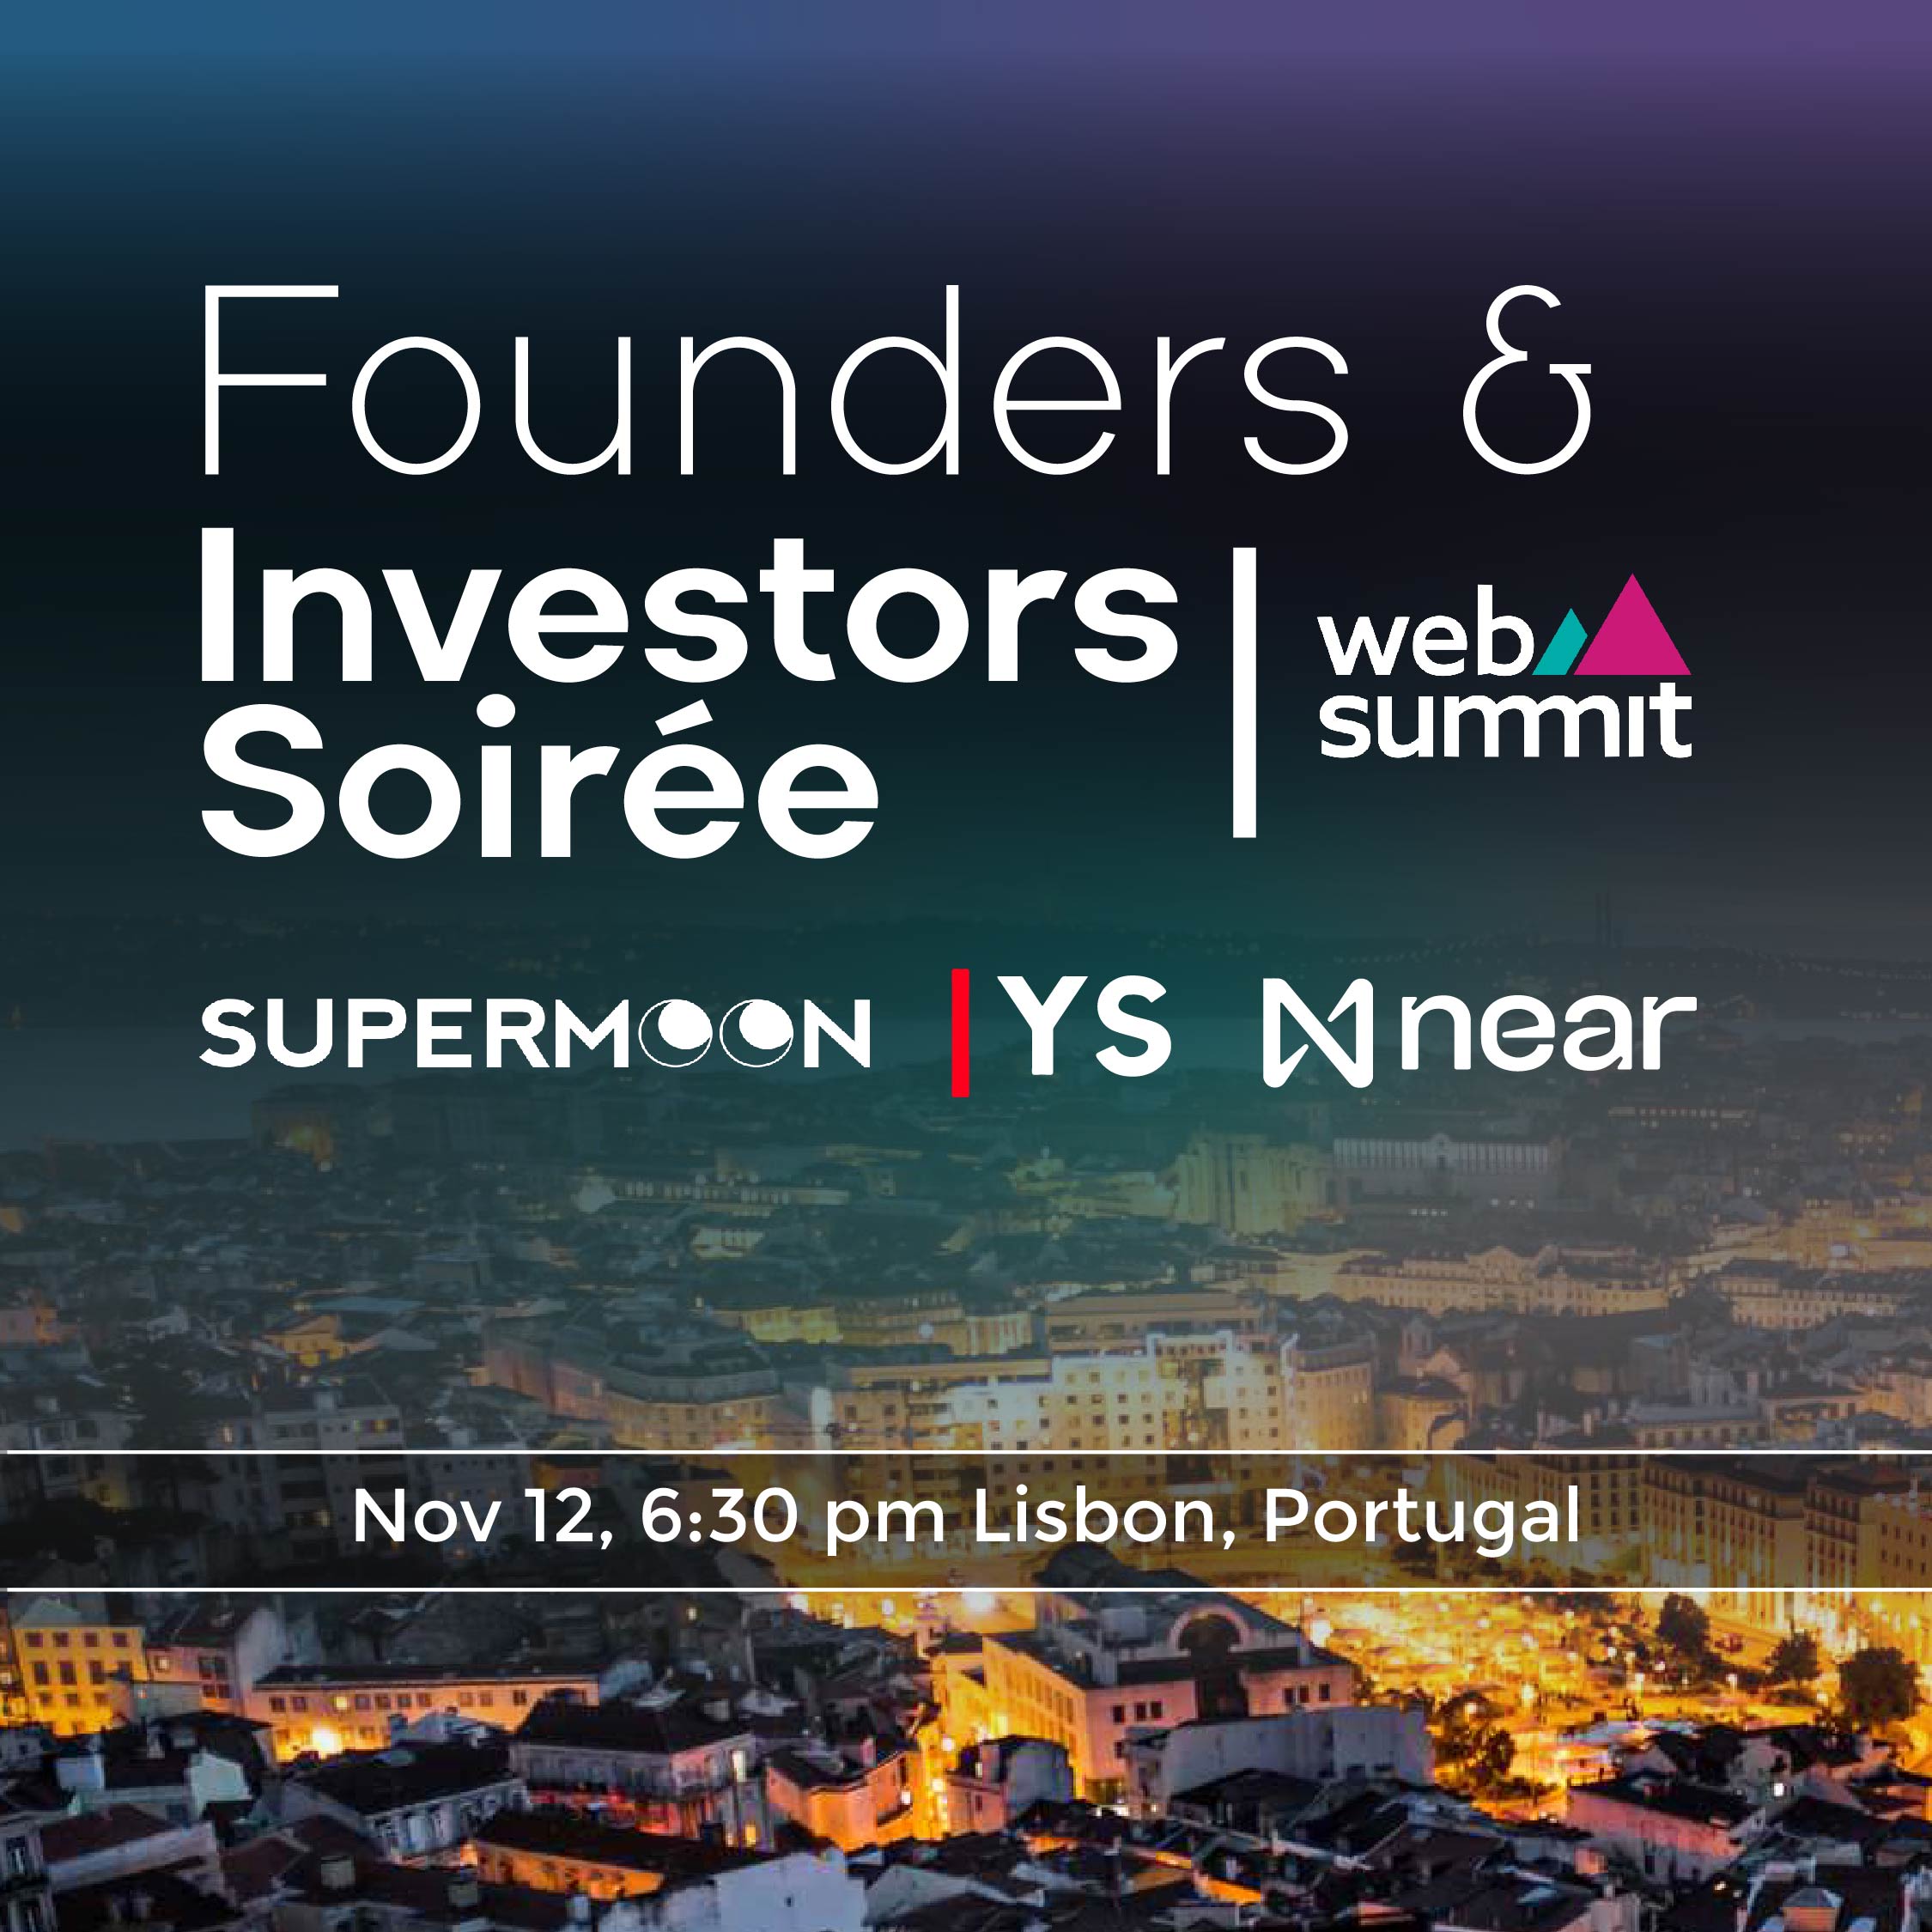 Founders & Investors Soirée @ WebSummit | Yorkseed & Supermoon